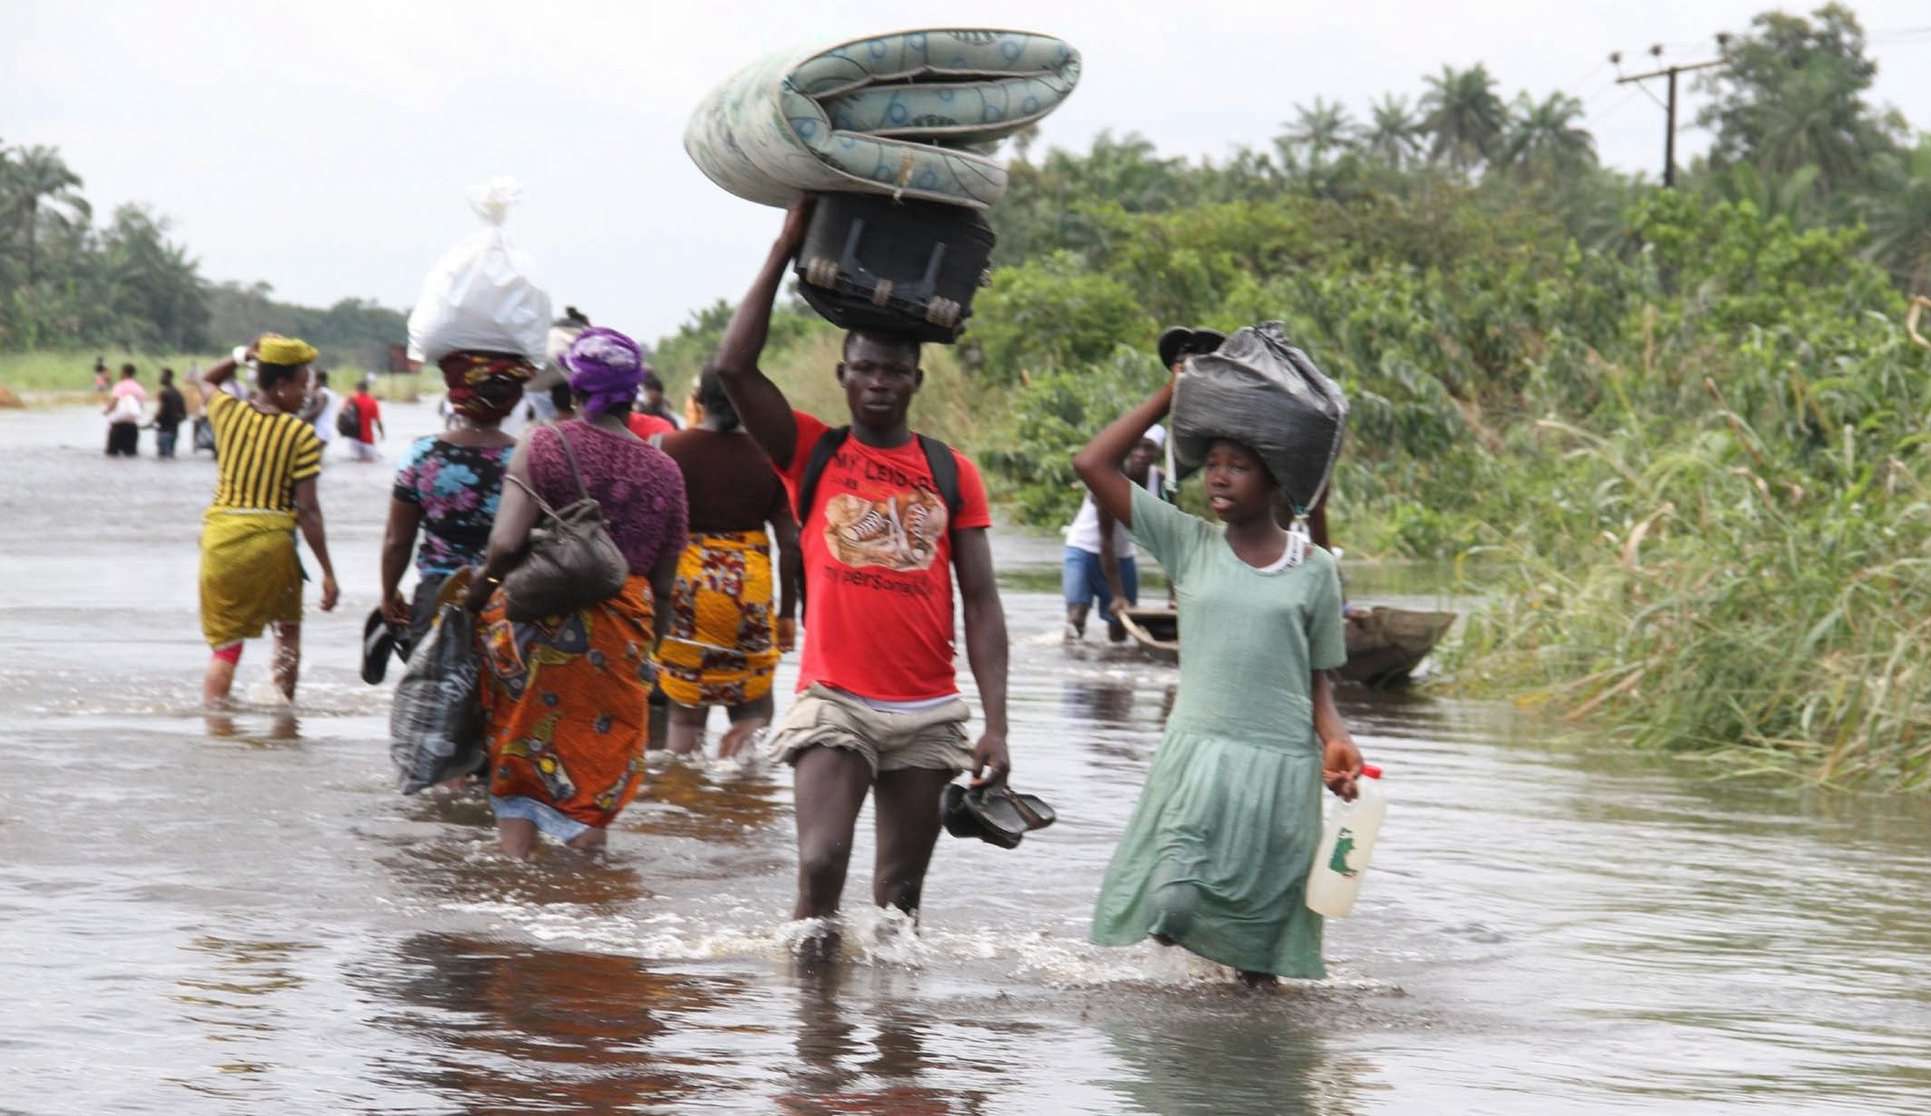  Inundações na Nigéria deixam mais de 600 mortos e 2 milhões de pessoas afetadas Lorena Bueri